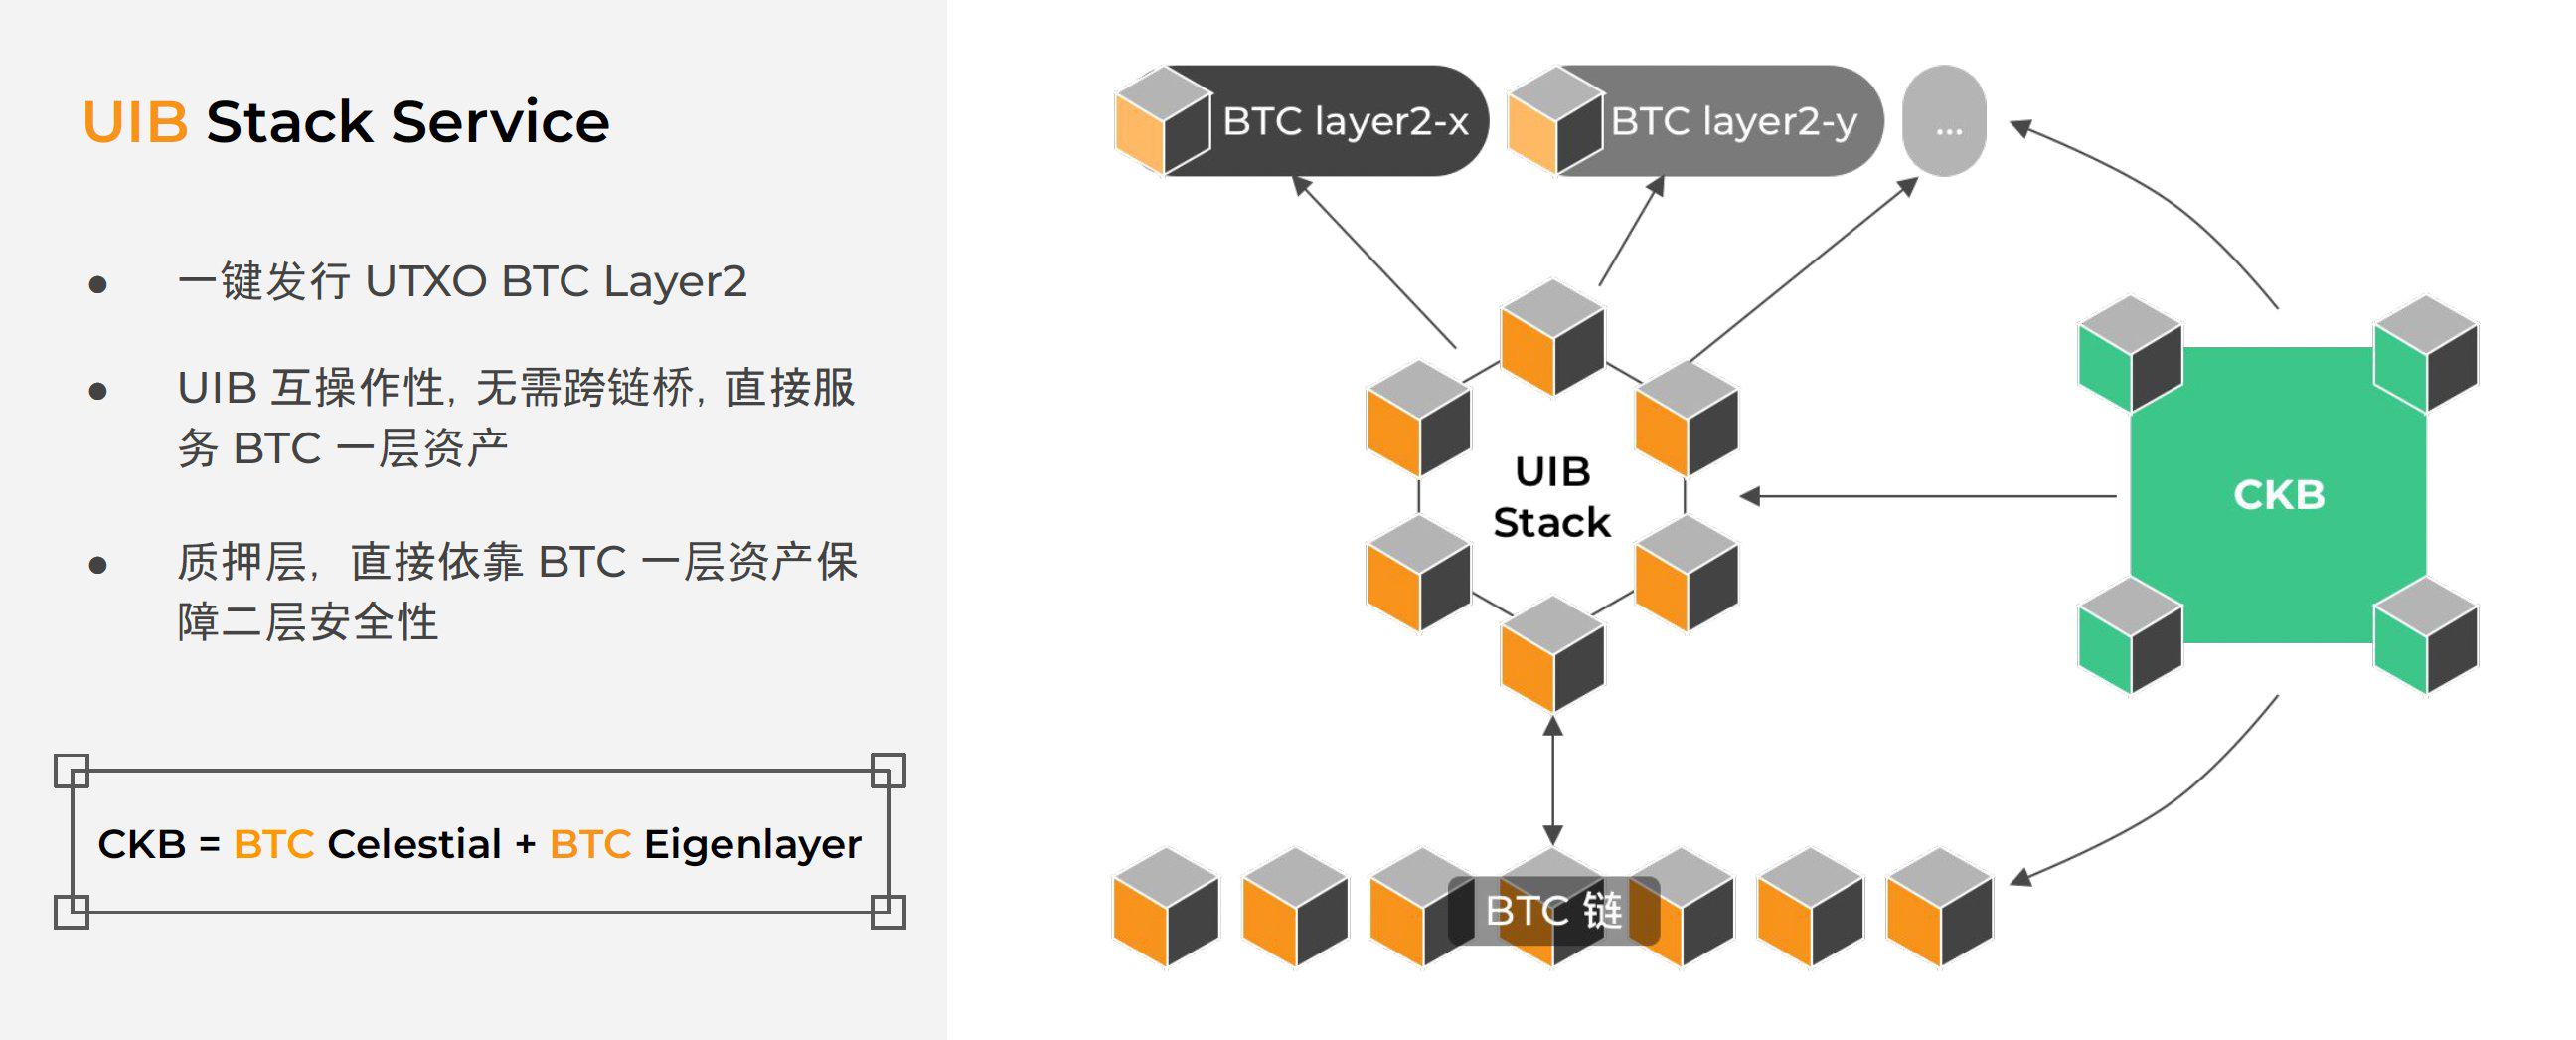 一文读懂模块化 BTC Layer2 一键发链平台 UTXO Stack